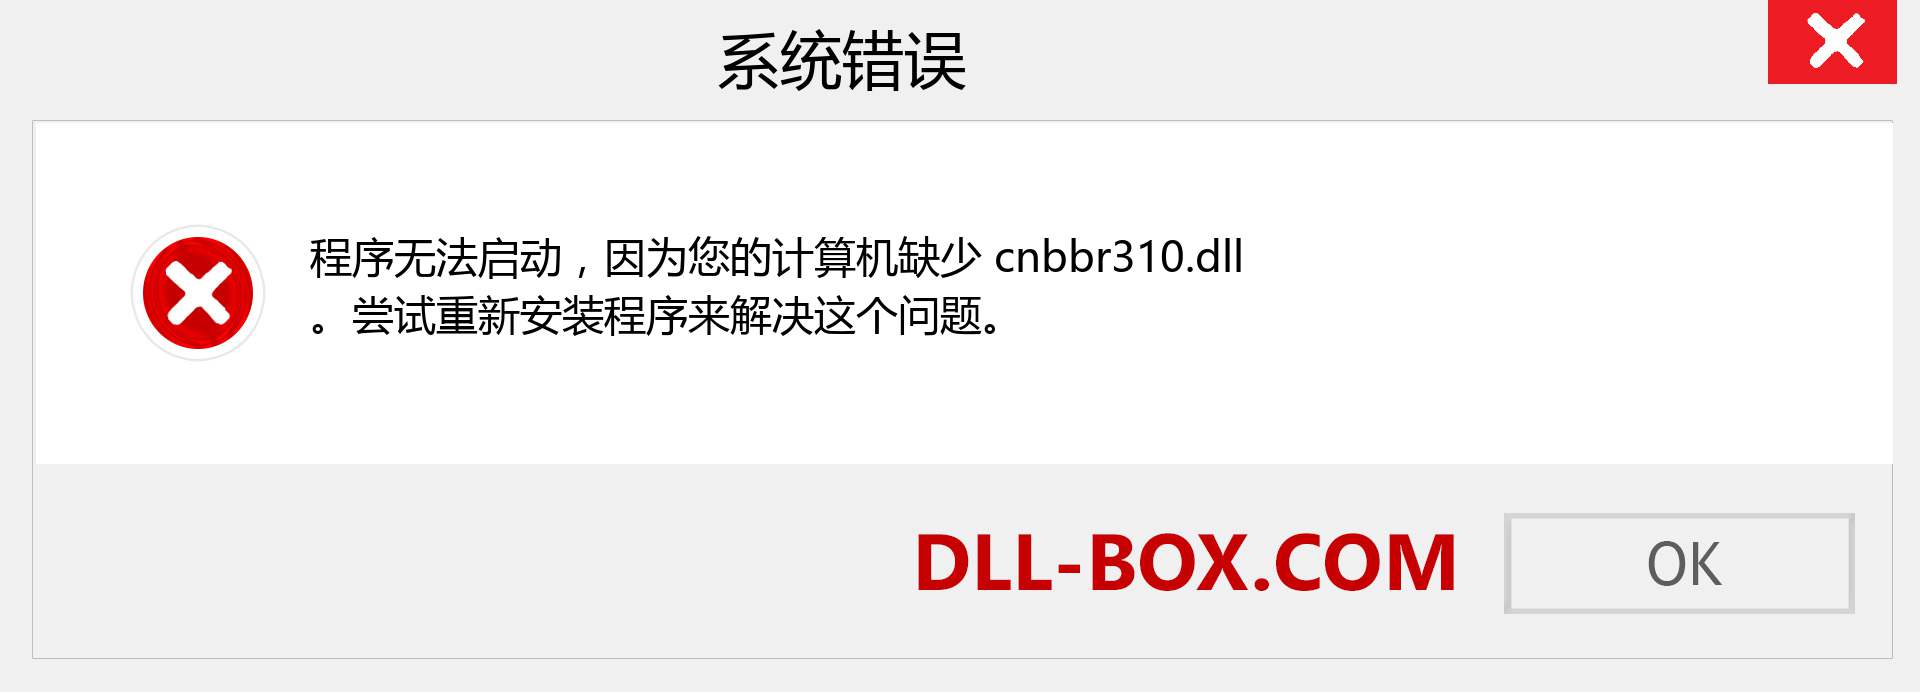 cnbbr310.dll 文件丢失？。 适用于 Windows 7、8、10 的下载 - 修复 Windows、照片、图像上的 cnbbr310 dll 丢失错误